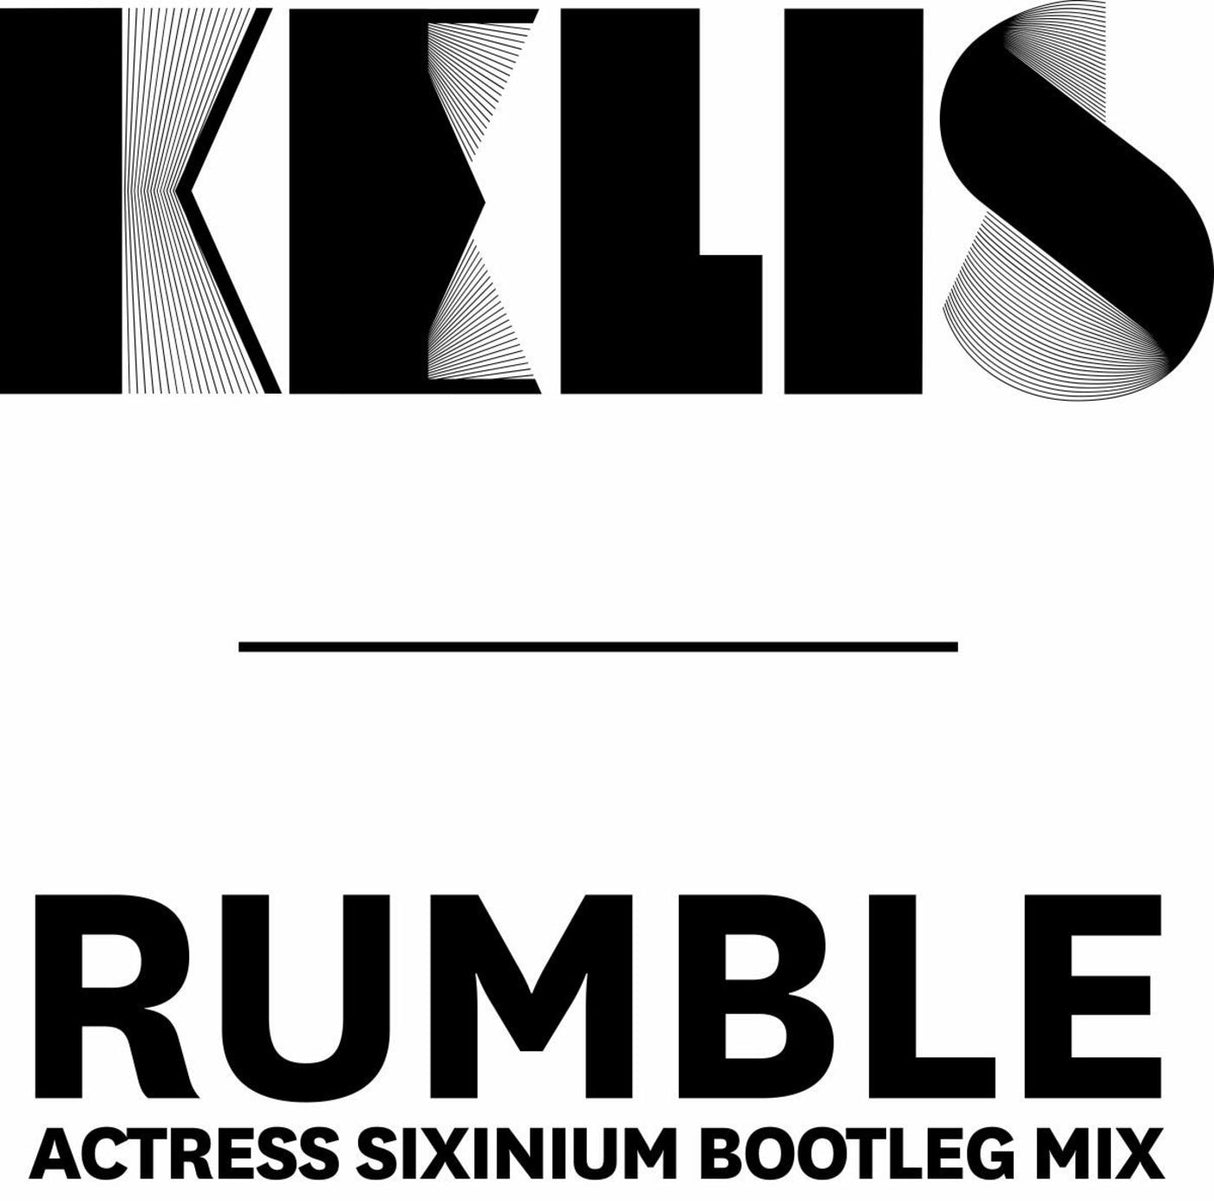 Rumble (Actress Sixinium Bootleg Mix) [Vinyl]